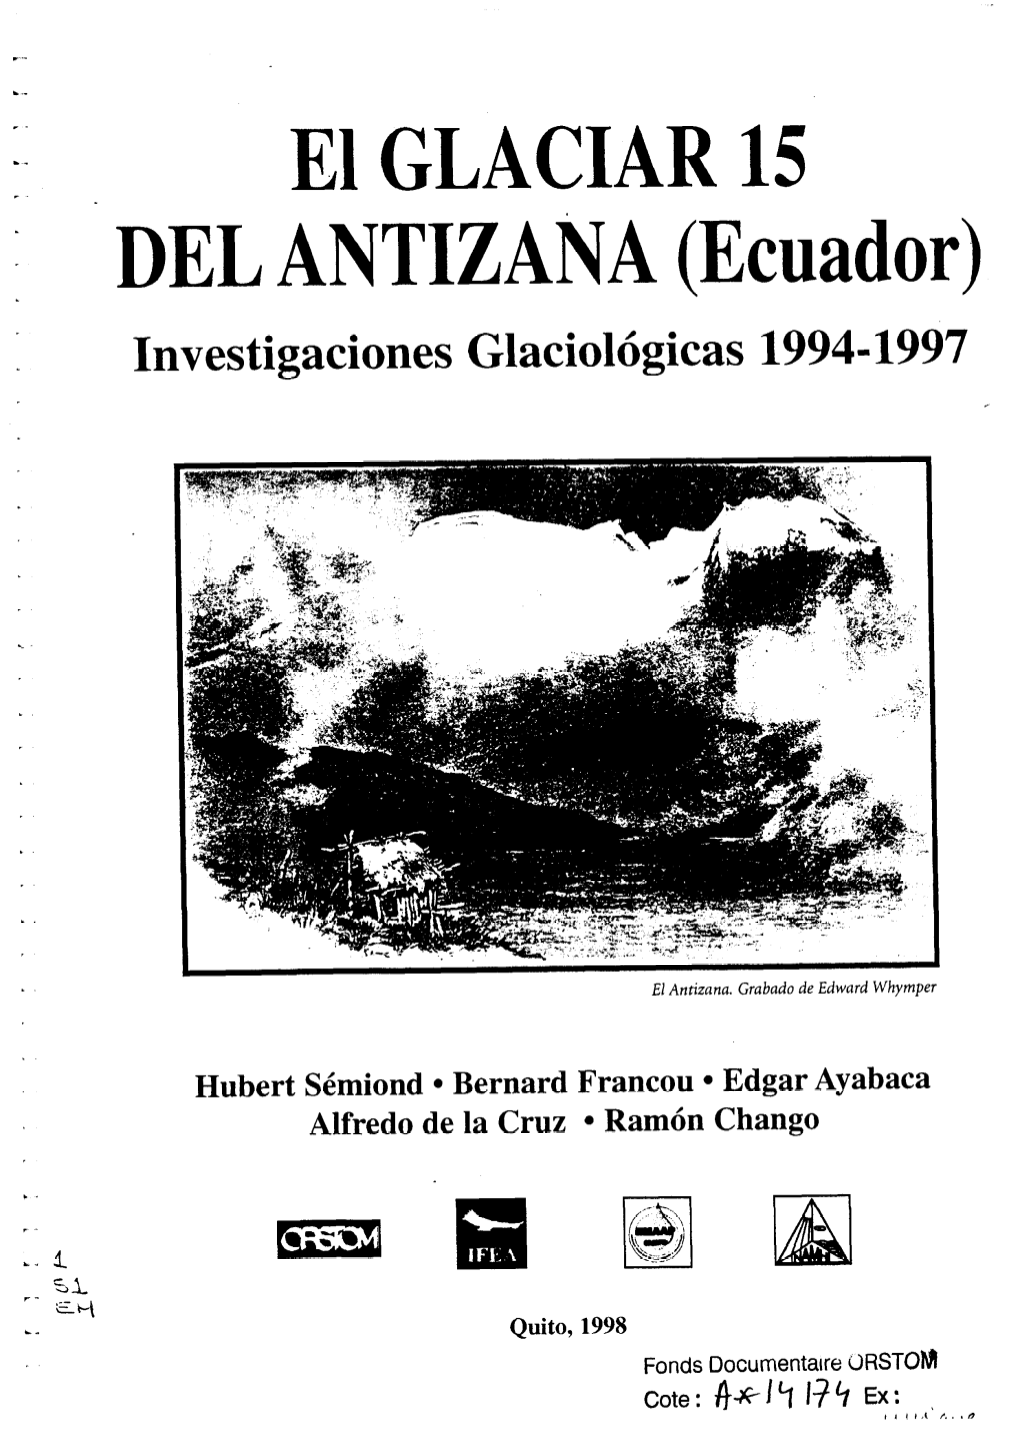 El Glaciar 15 Del Antizana, Ecuador : Investigaciones Glaciologicas 1994